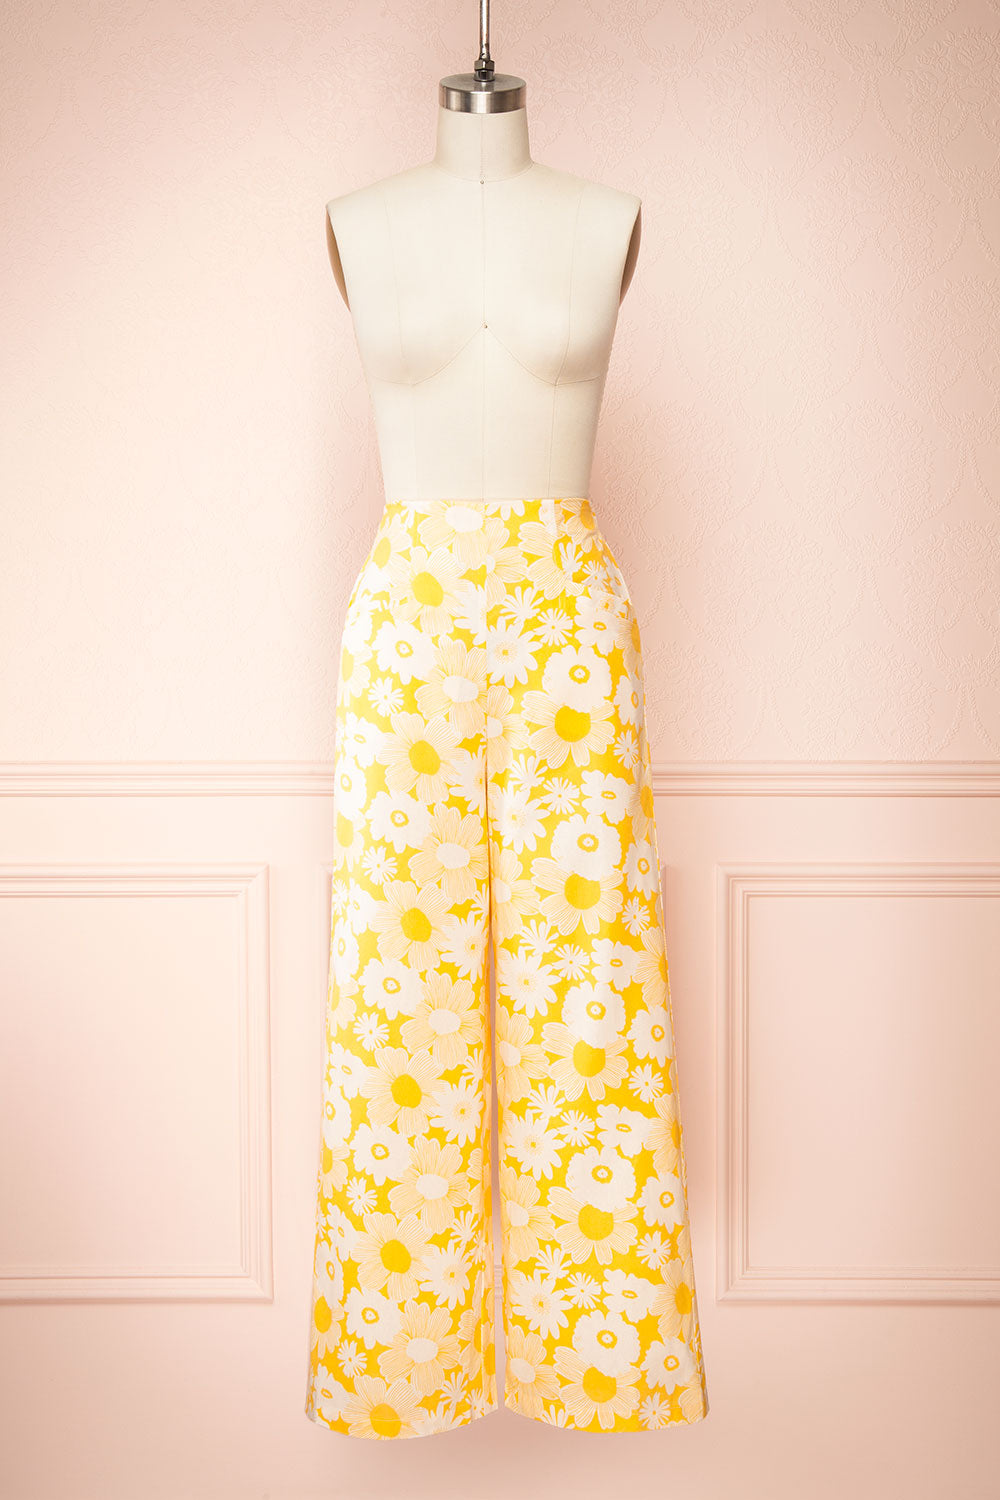  XIALON Women's Dress High Waist Floral Print Flare Leg Pants  (Color : Multicolor, Size : Large) : Clothing, Shoes & Jewelry